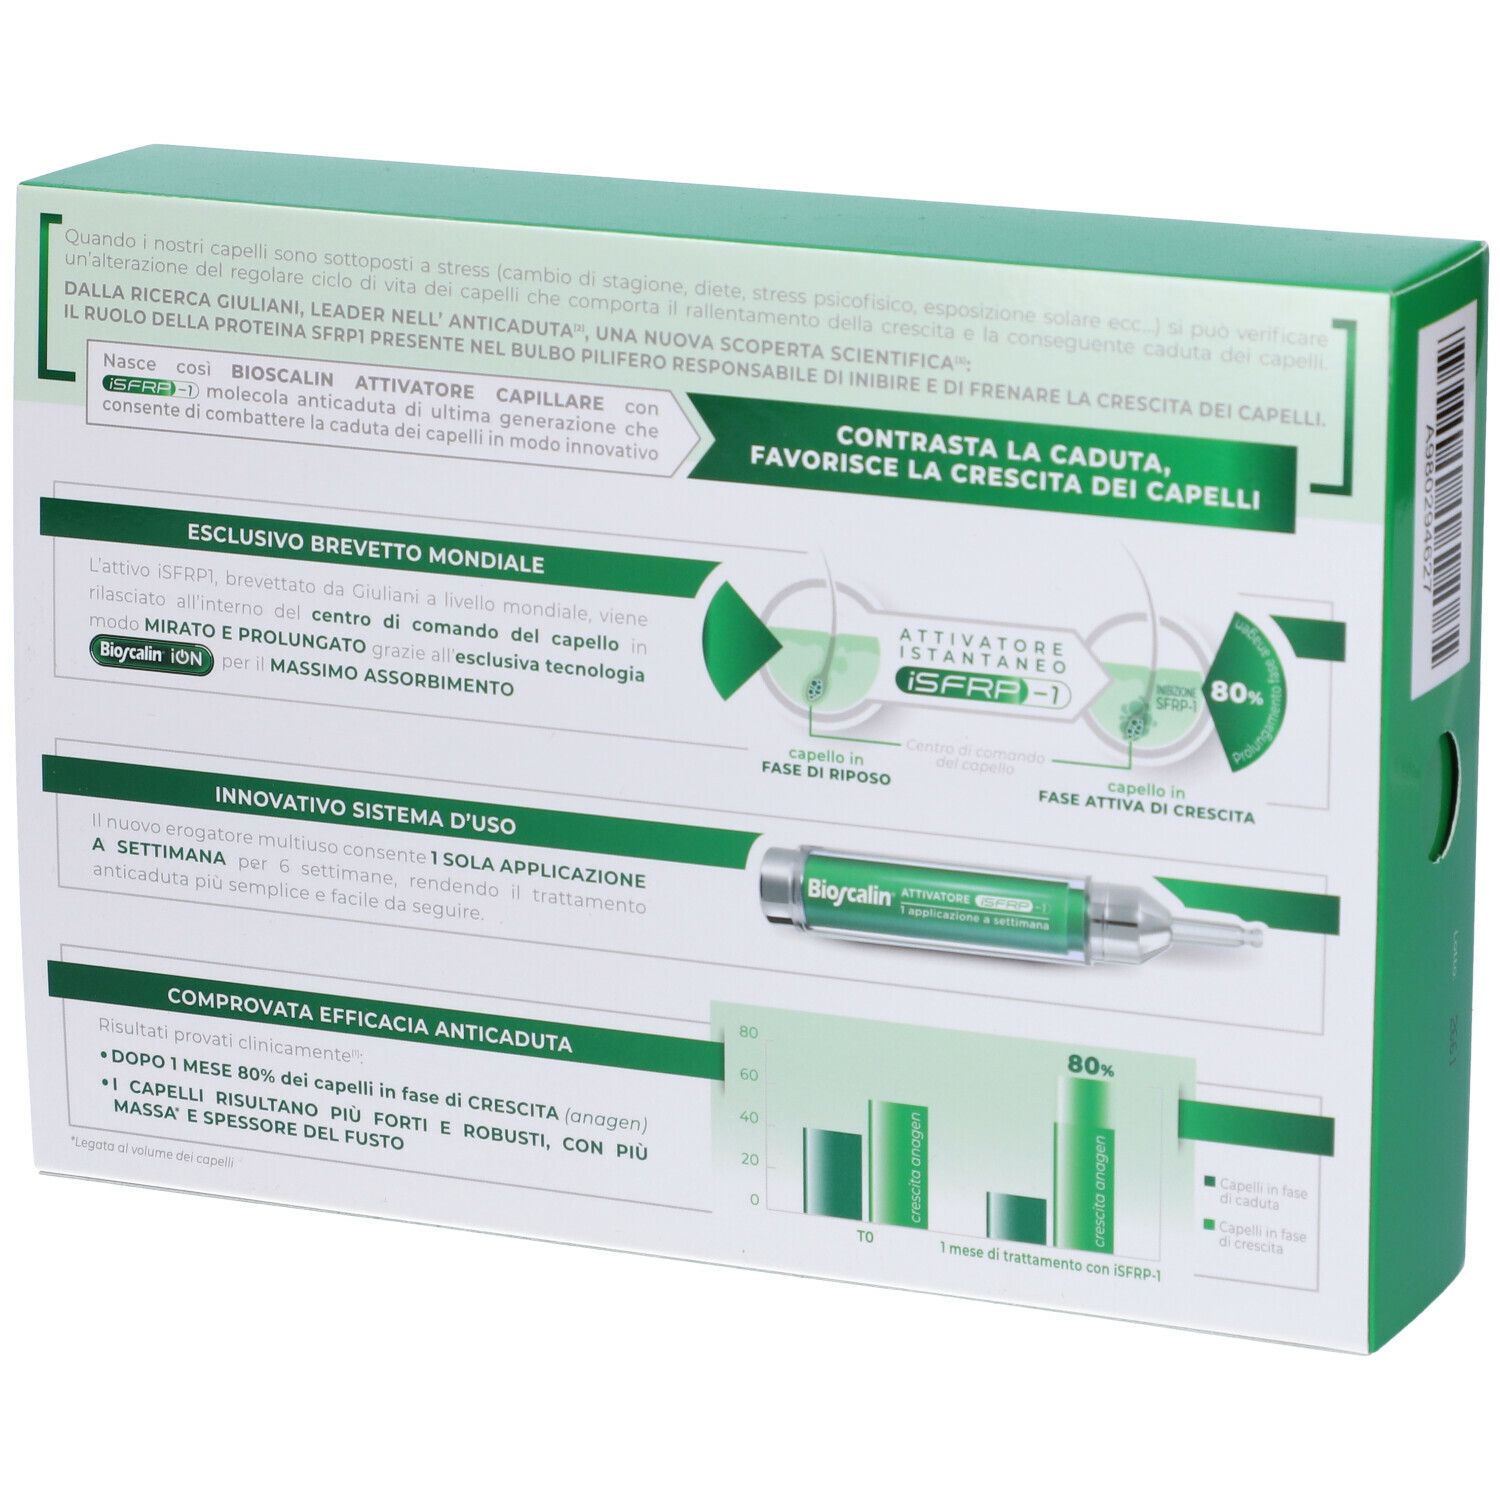 Bioscalin® Attivatore Capillare iSFRP-1